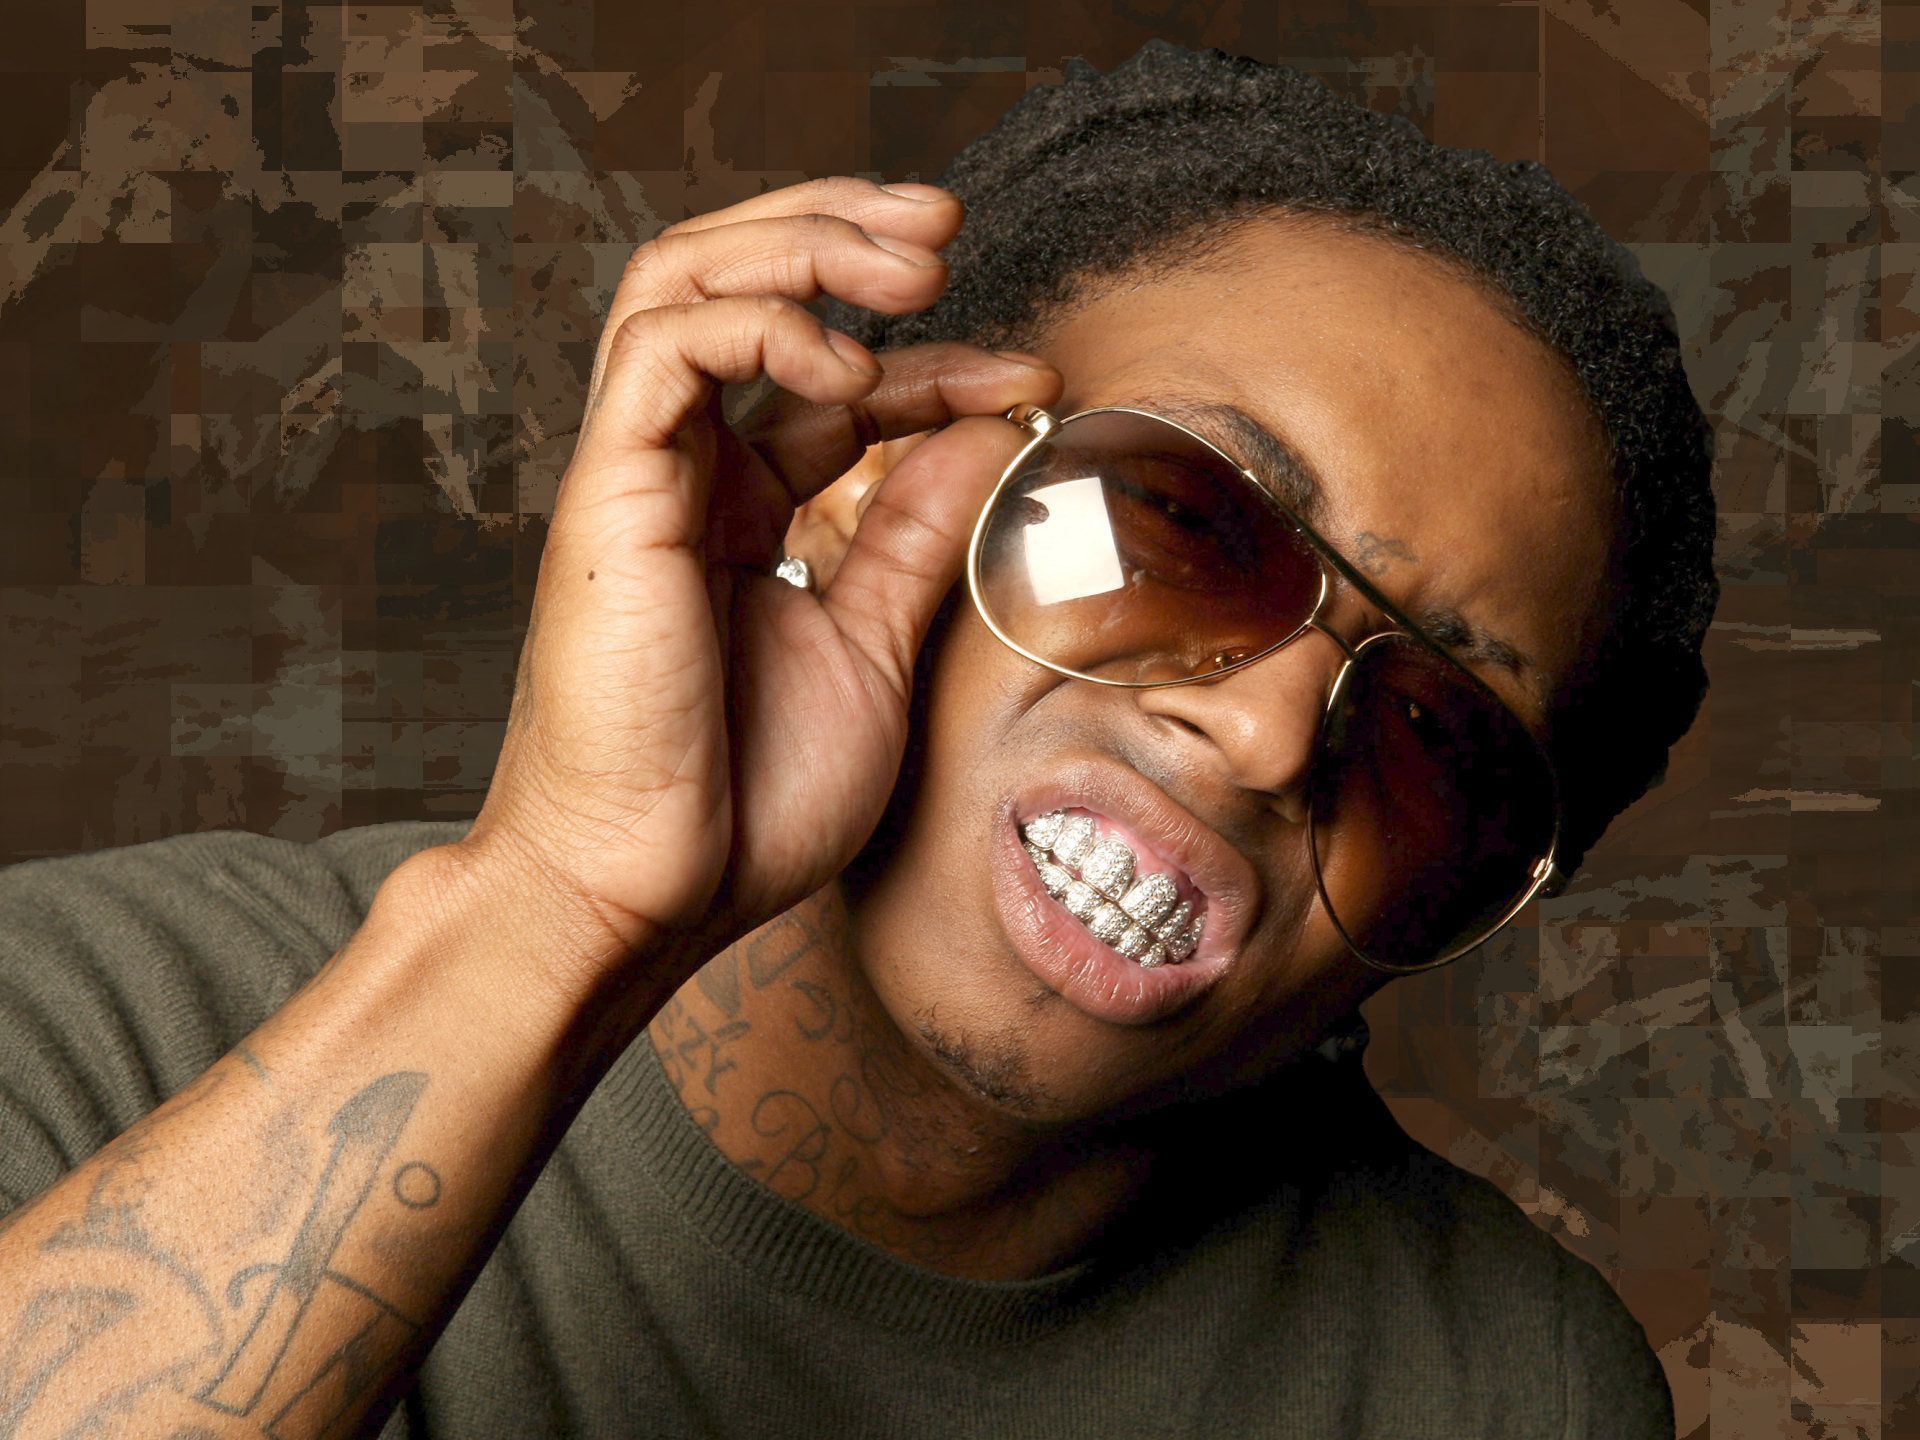 Lil Wayne Wallpaper Photos 2014